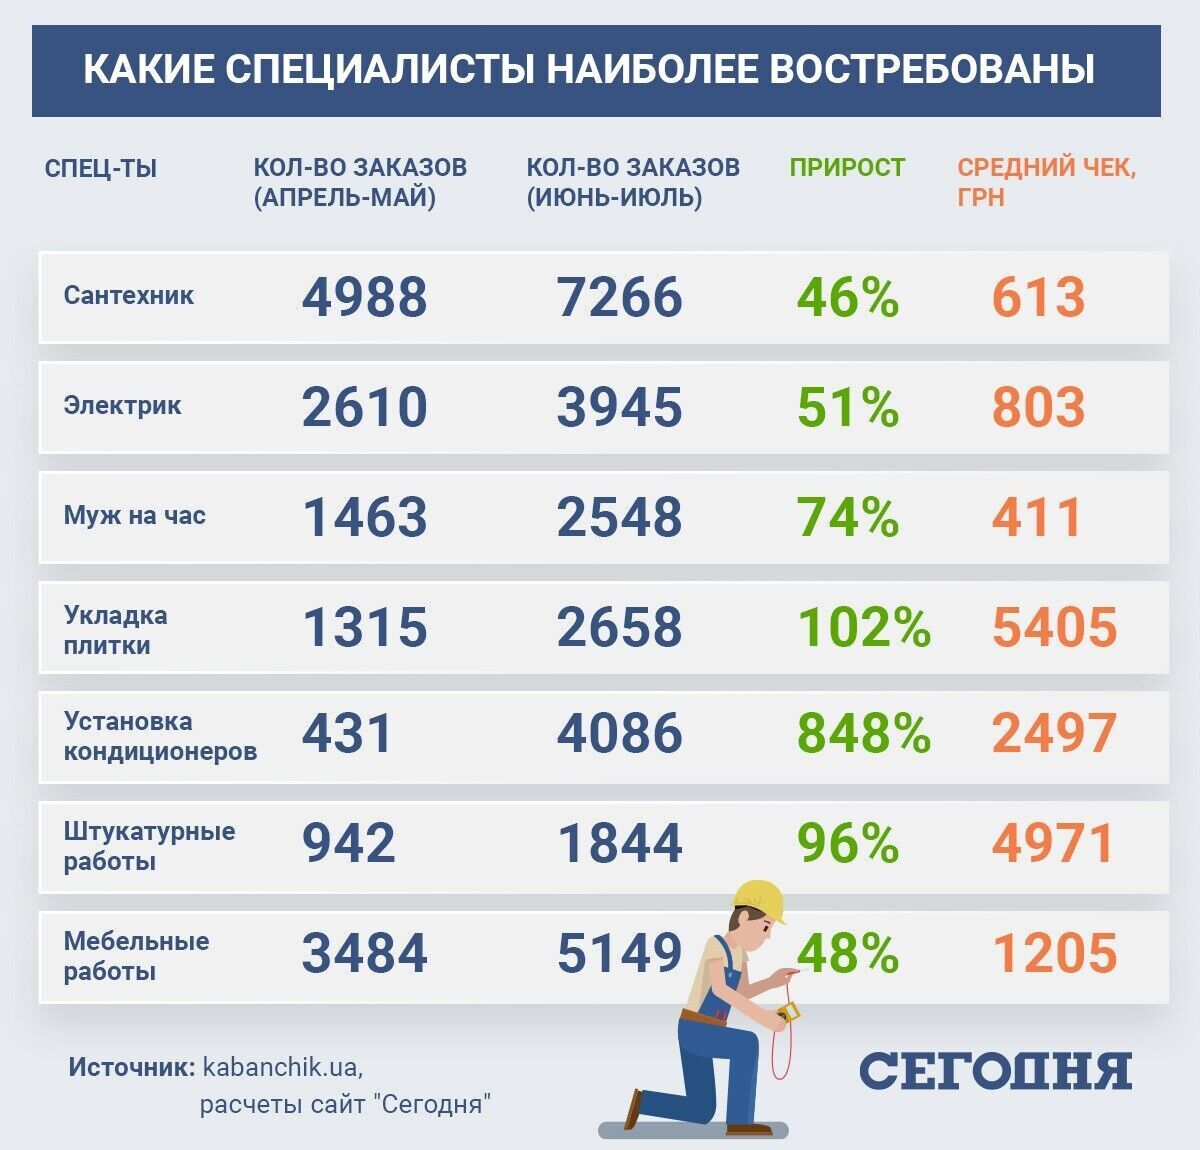 На какие услуги возрос спрос в Украине во время карантина